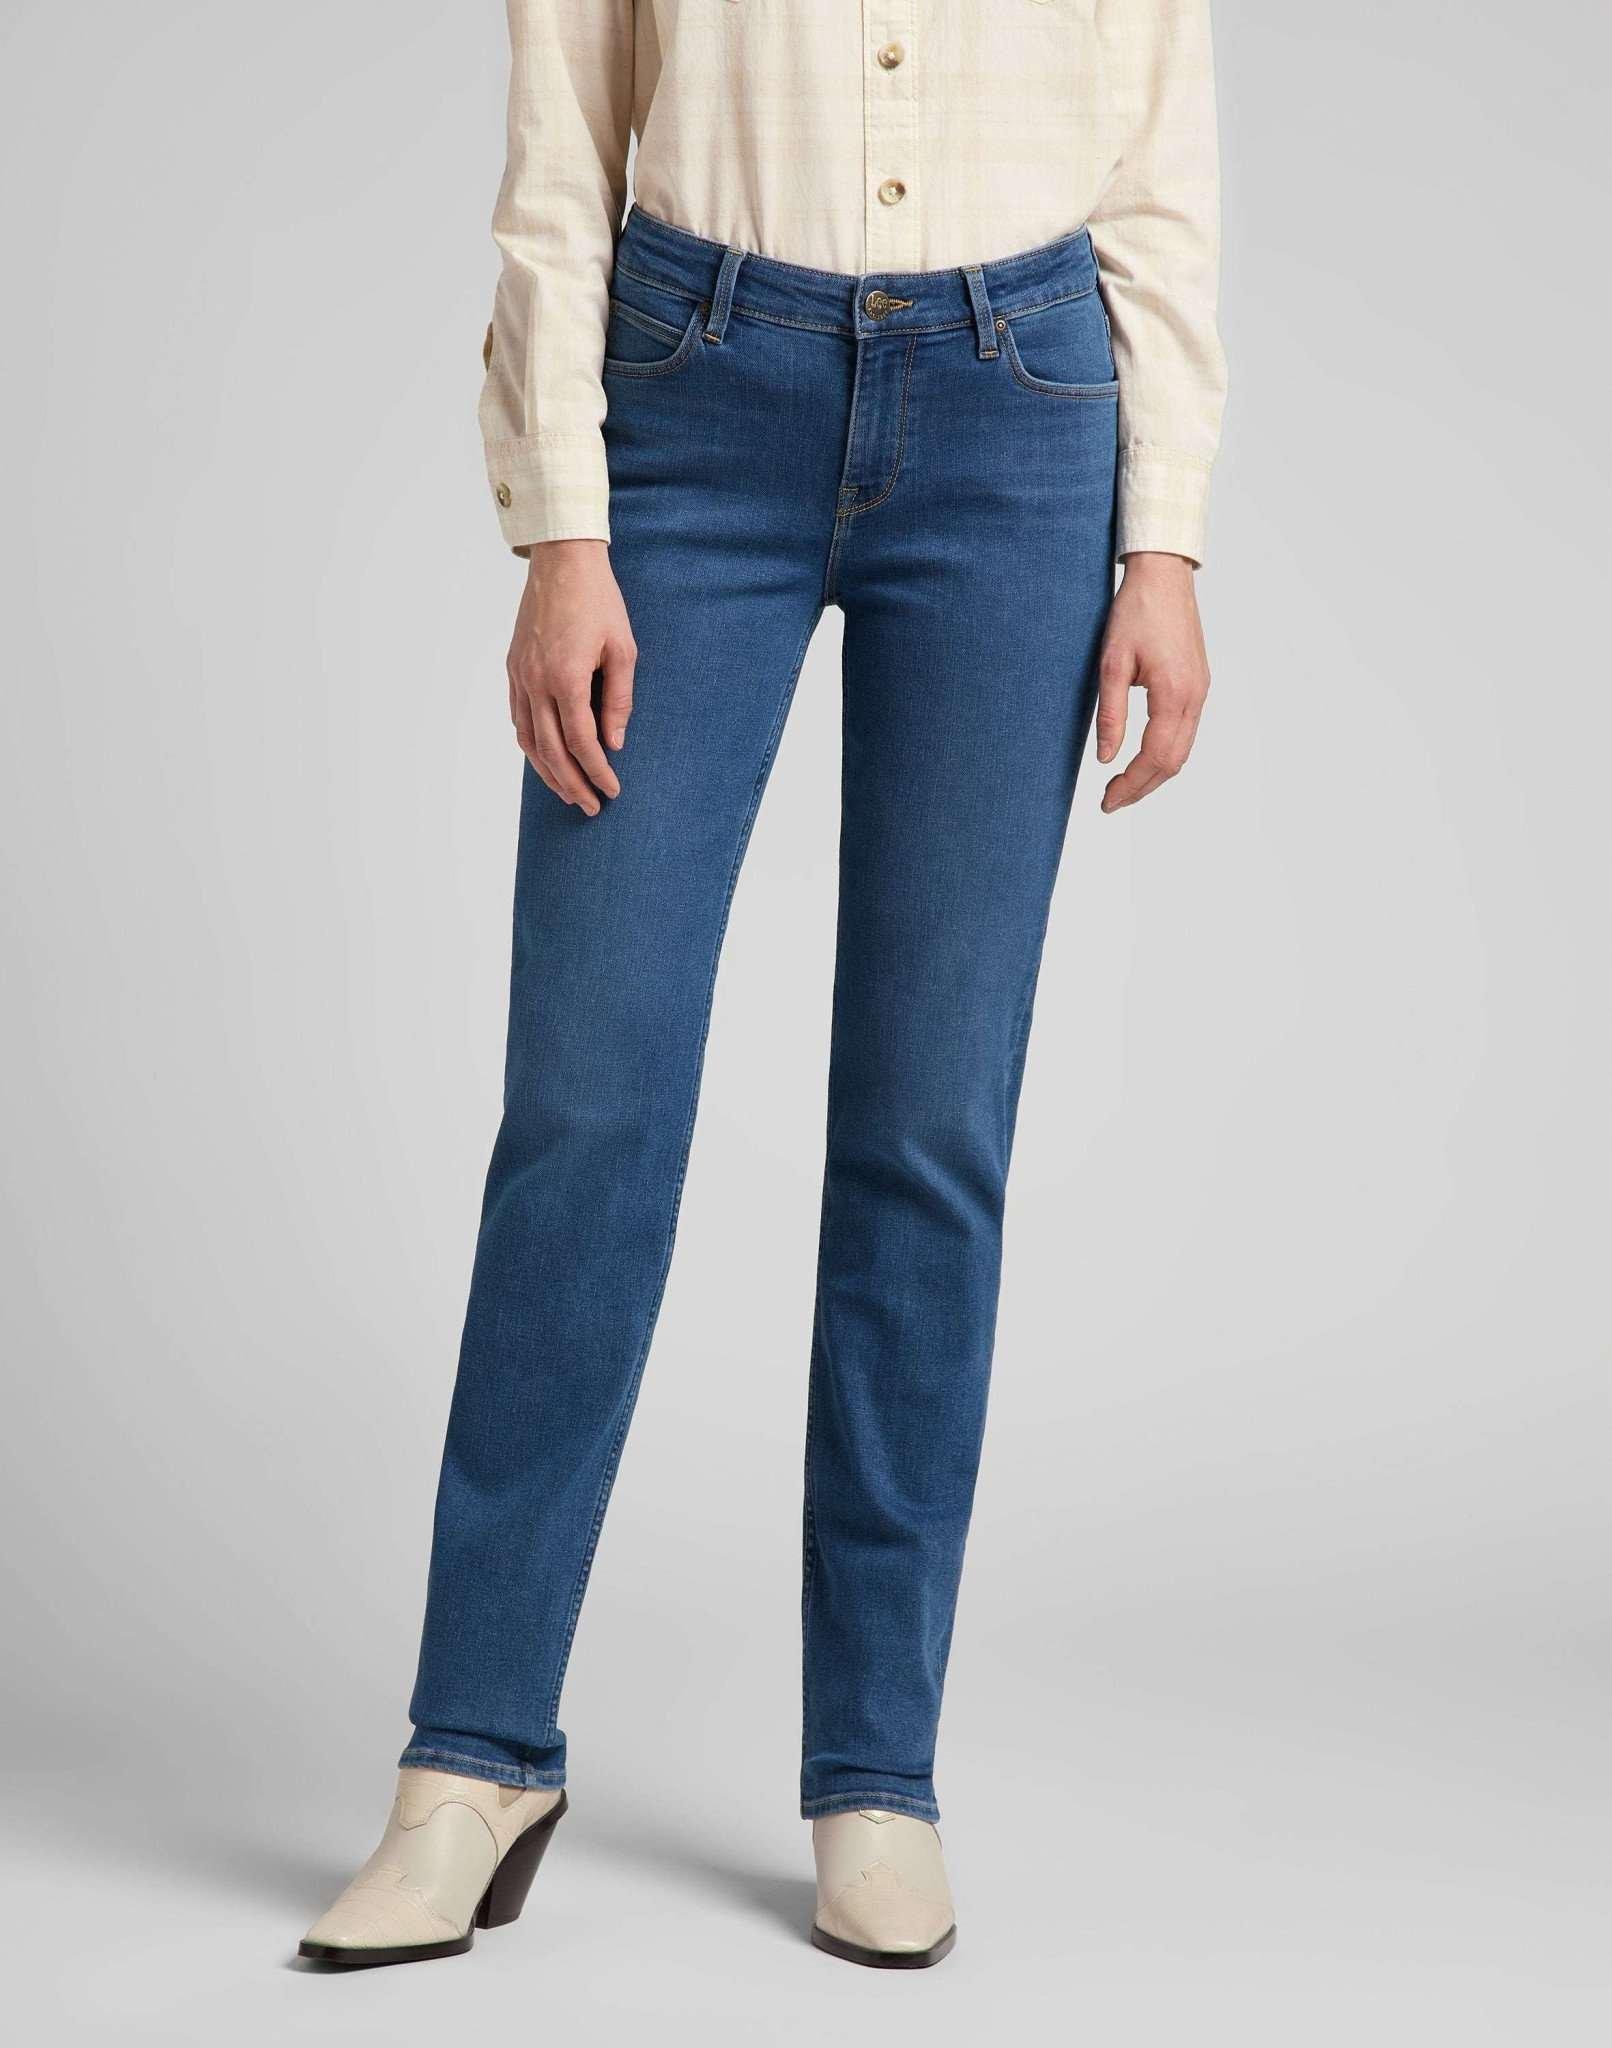 Jeans Straight Leg Marion Damen Blau Denim L33/W26 von Lee